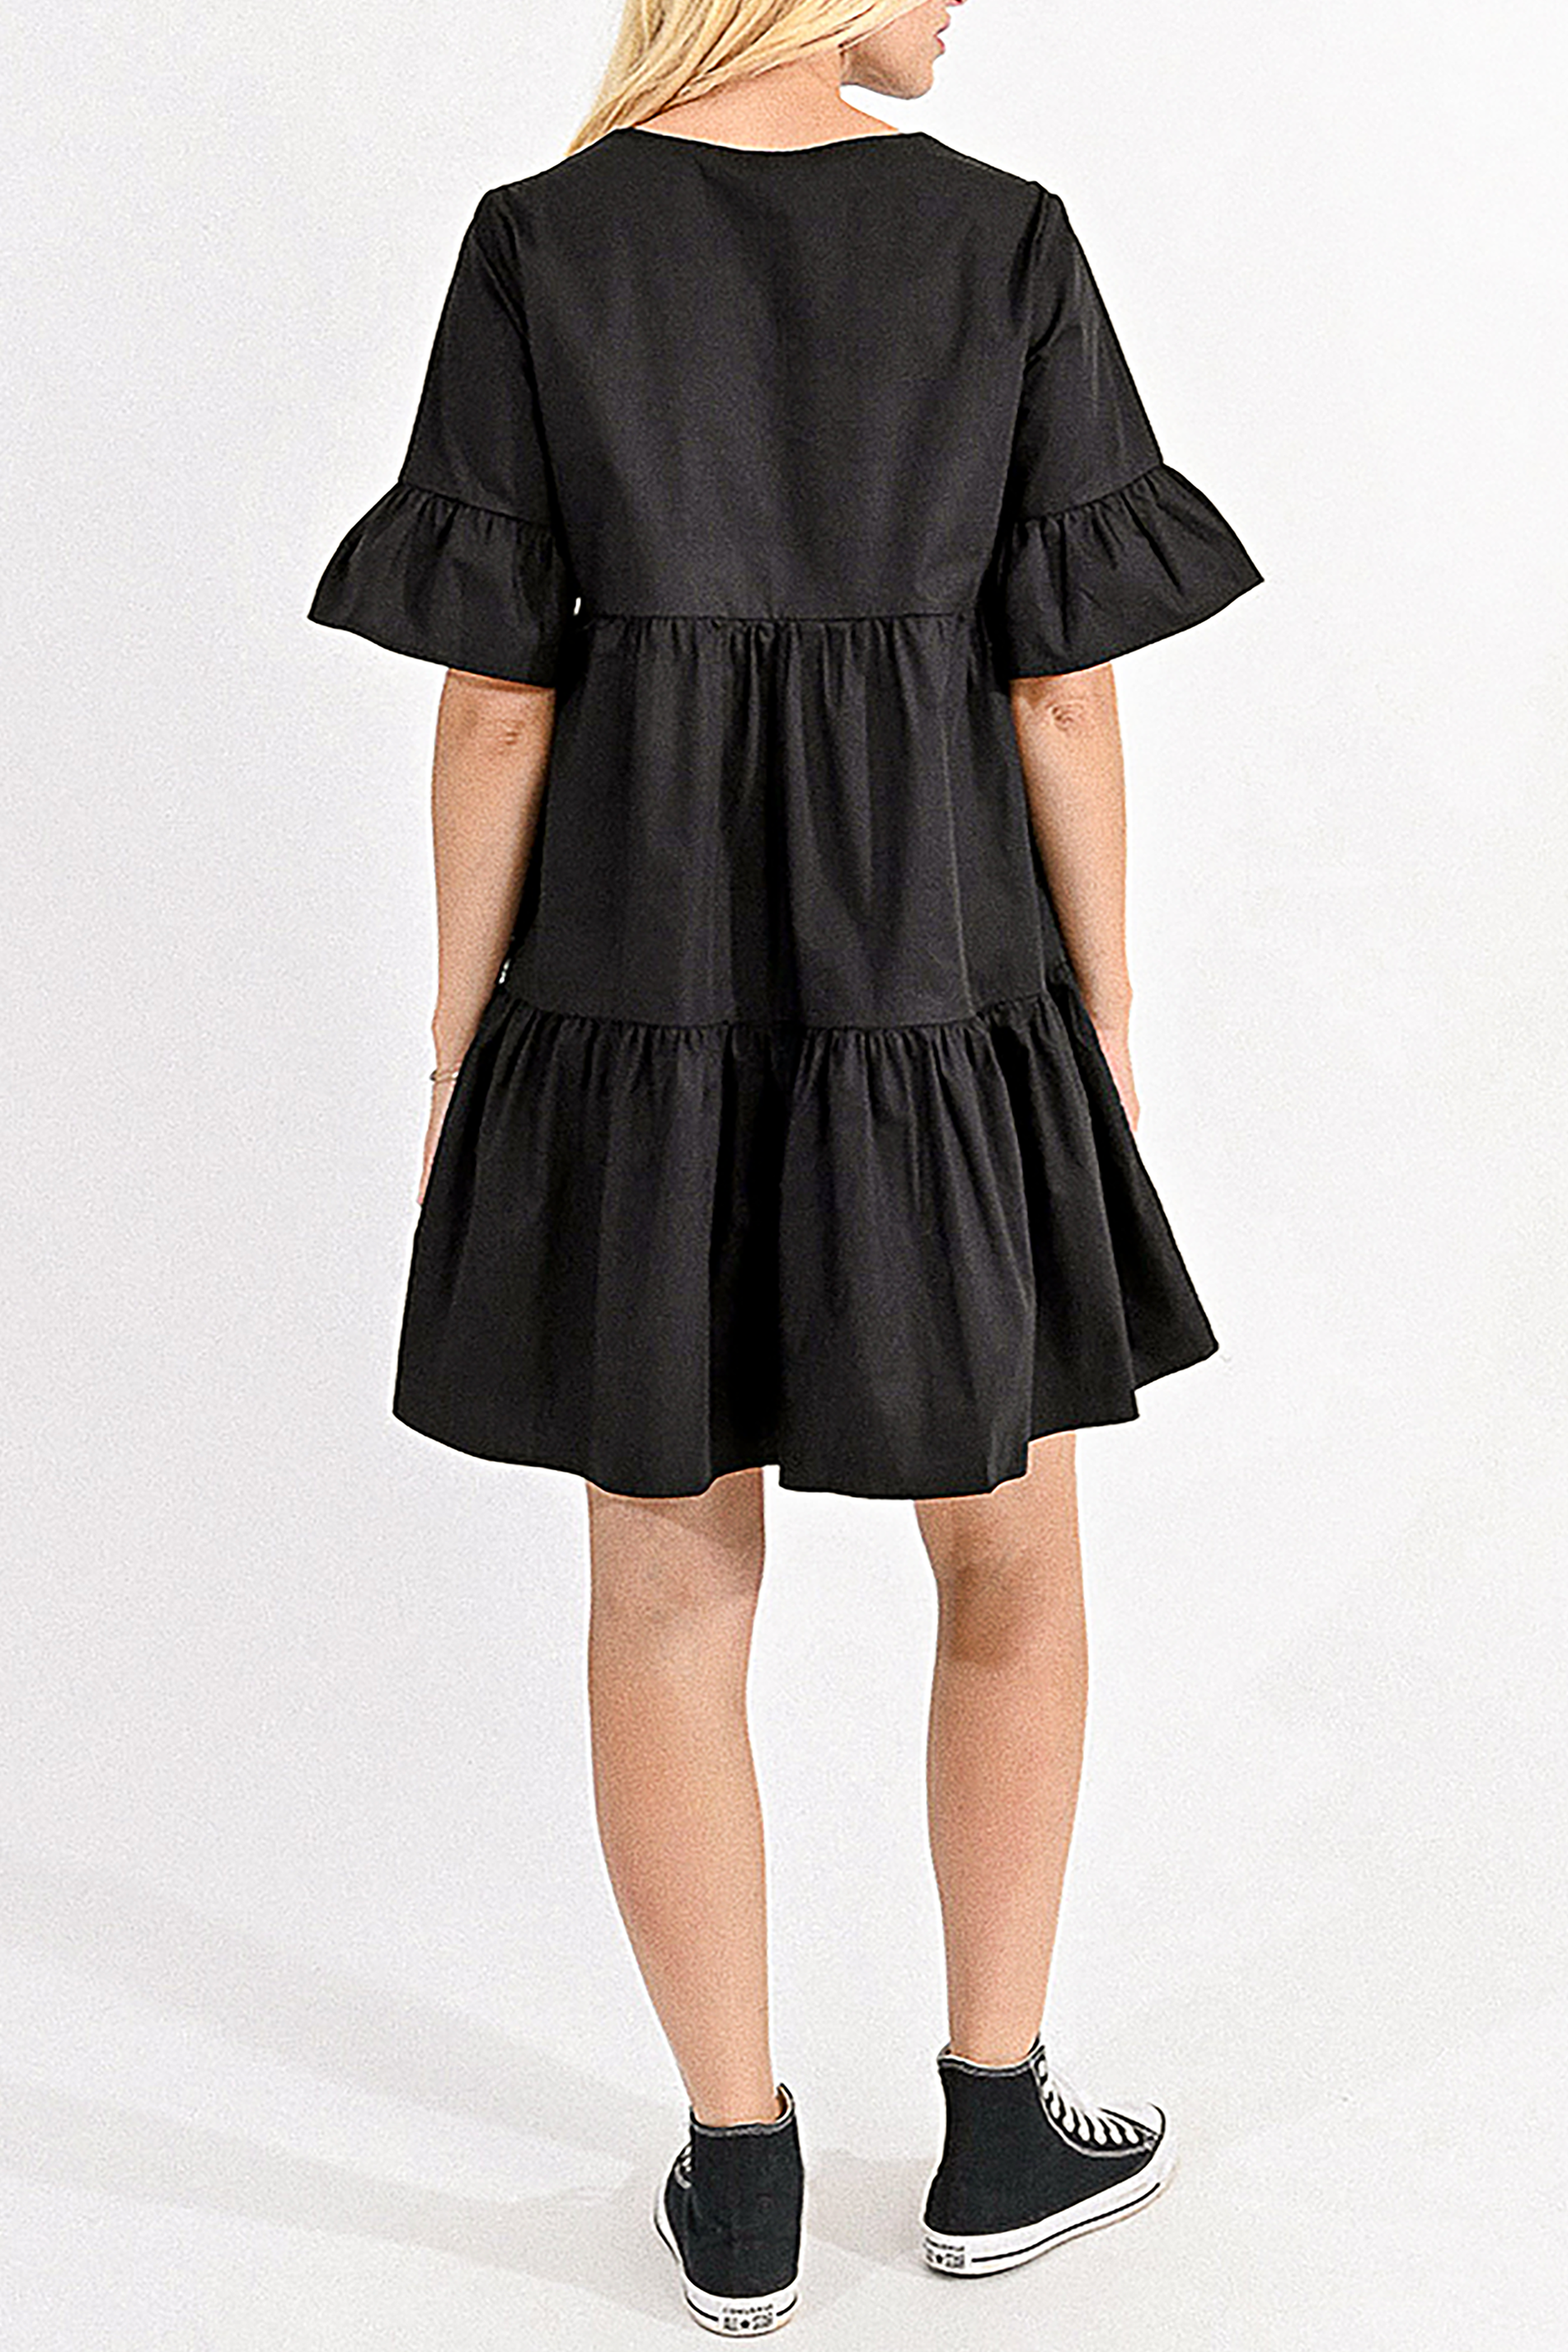 Celine Mini Dress in Black